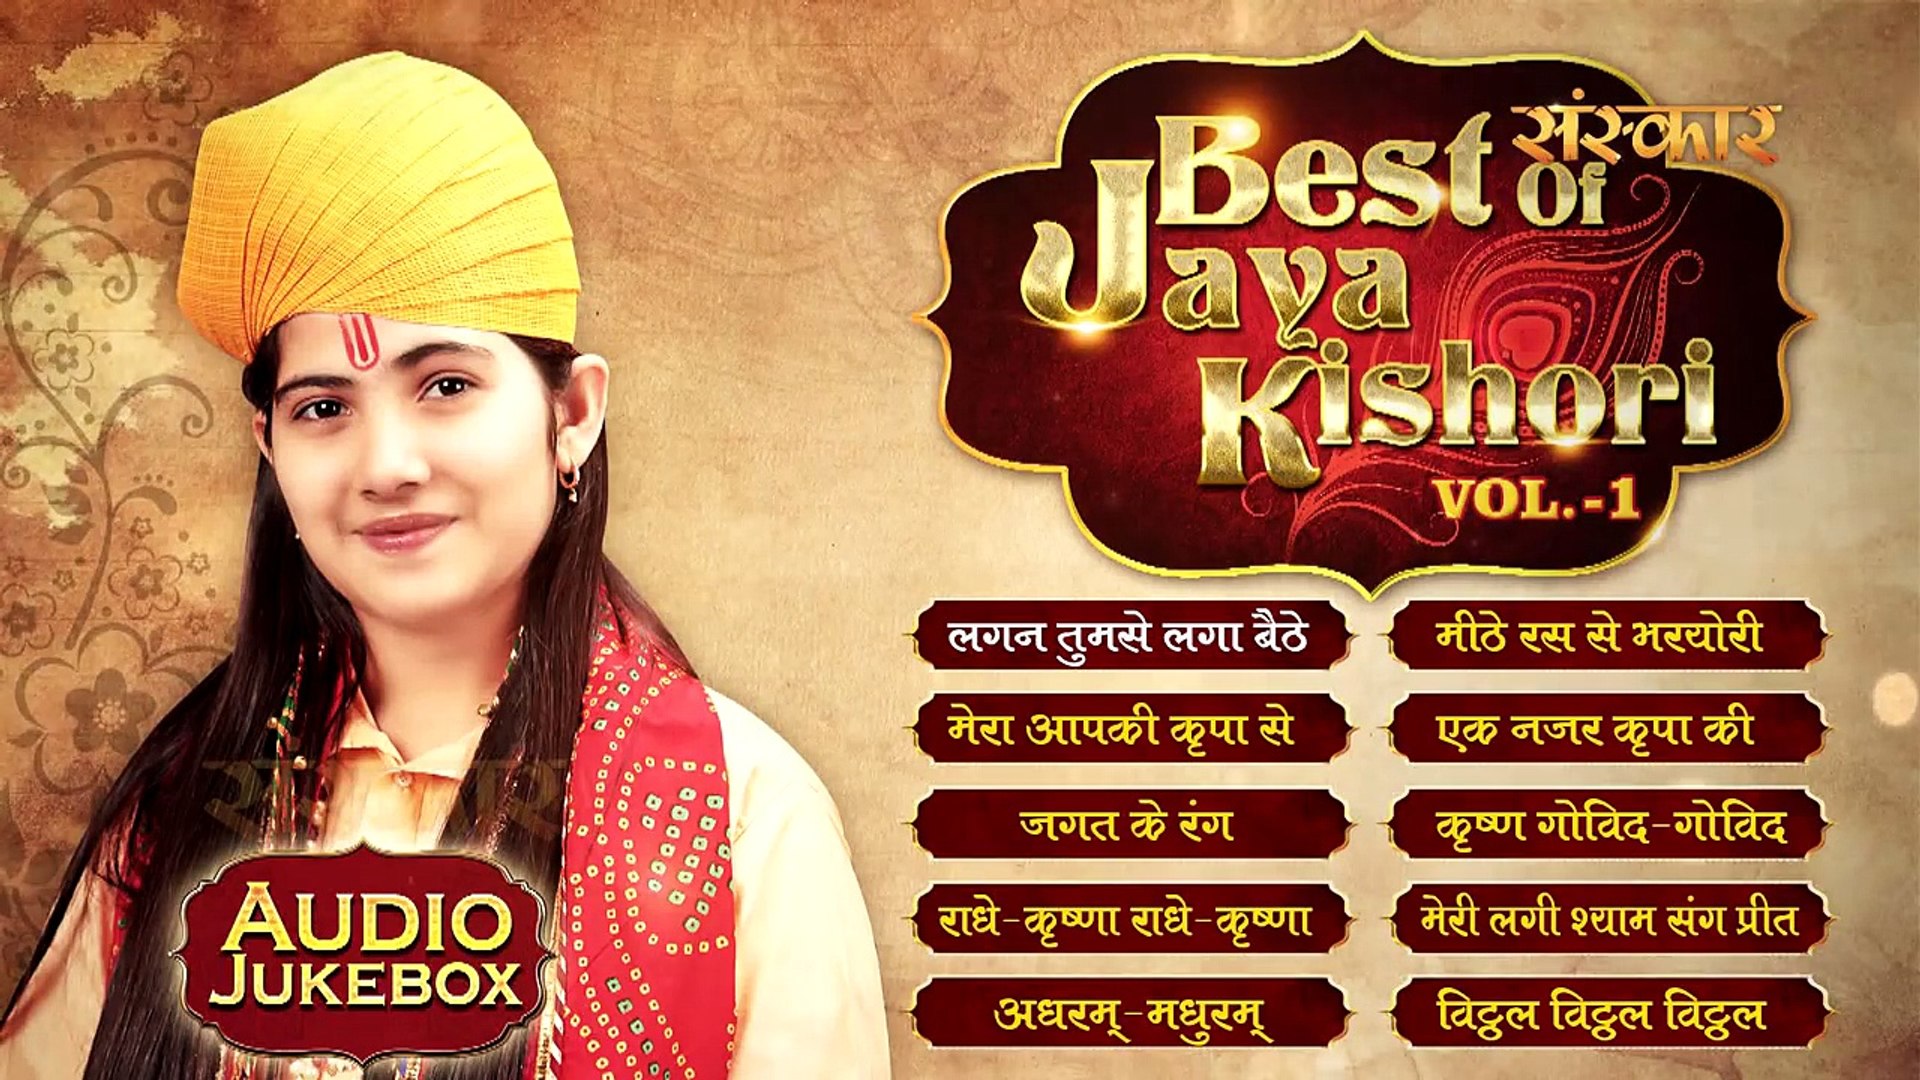 Best of jaya kishori ji vol 1 mp3 download